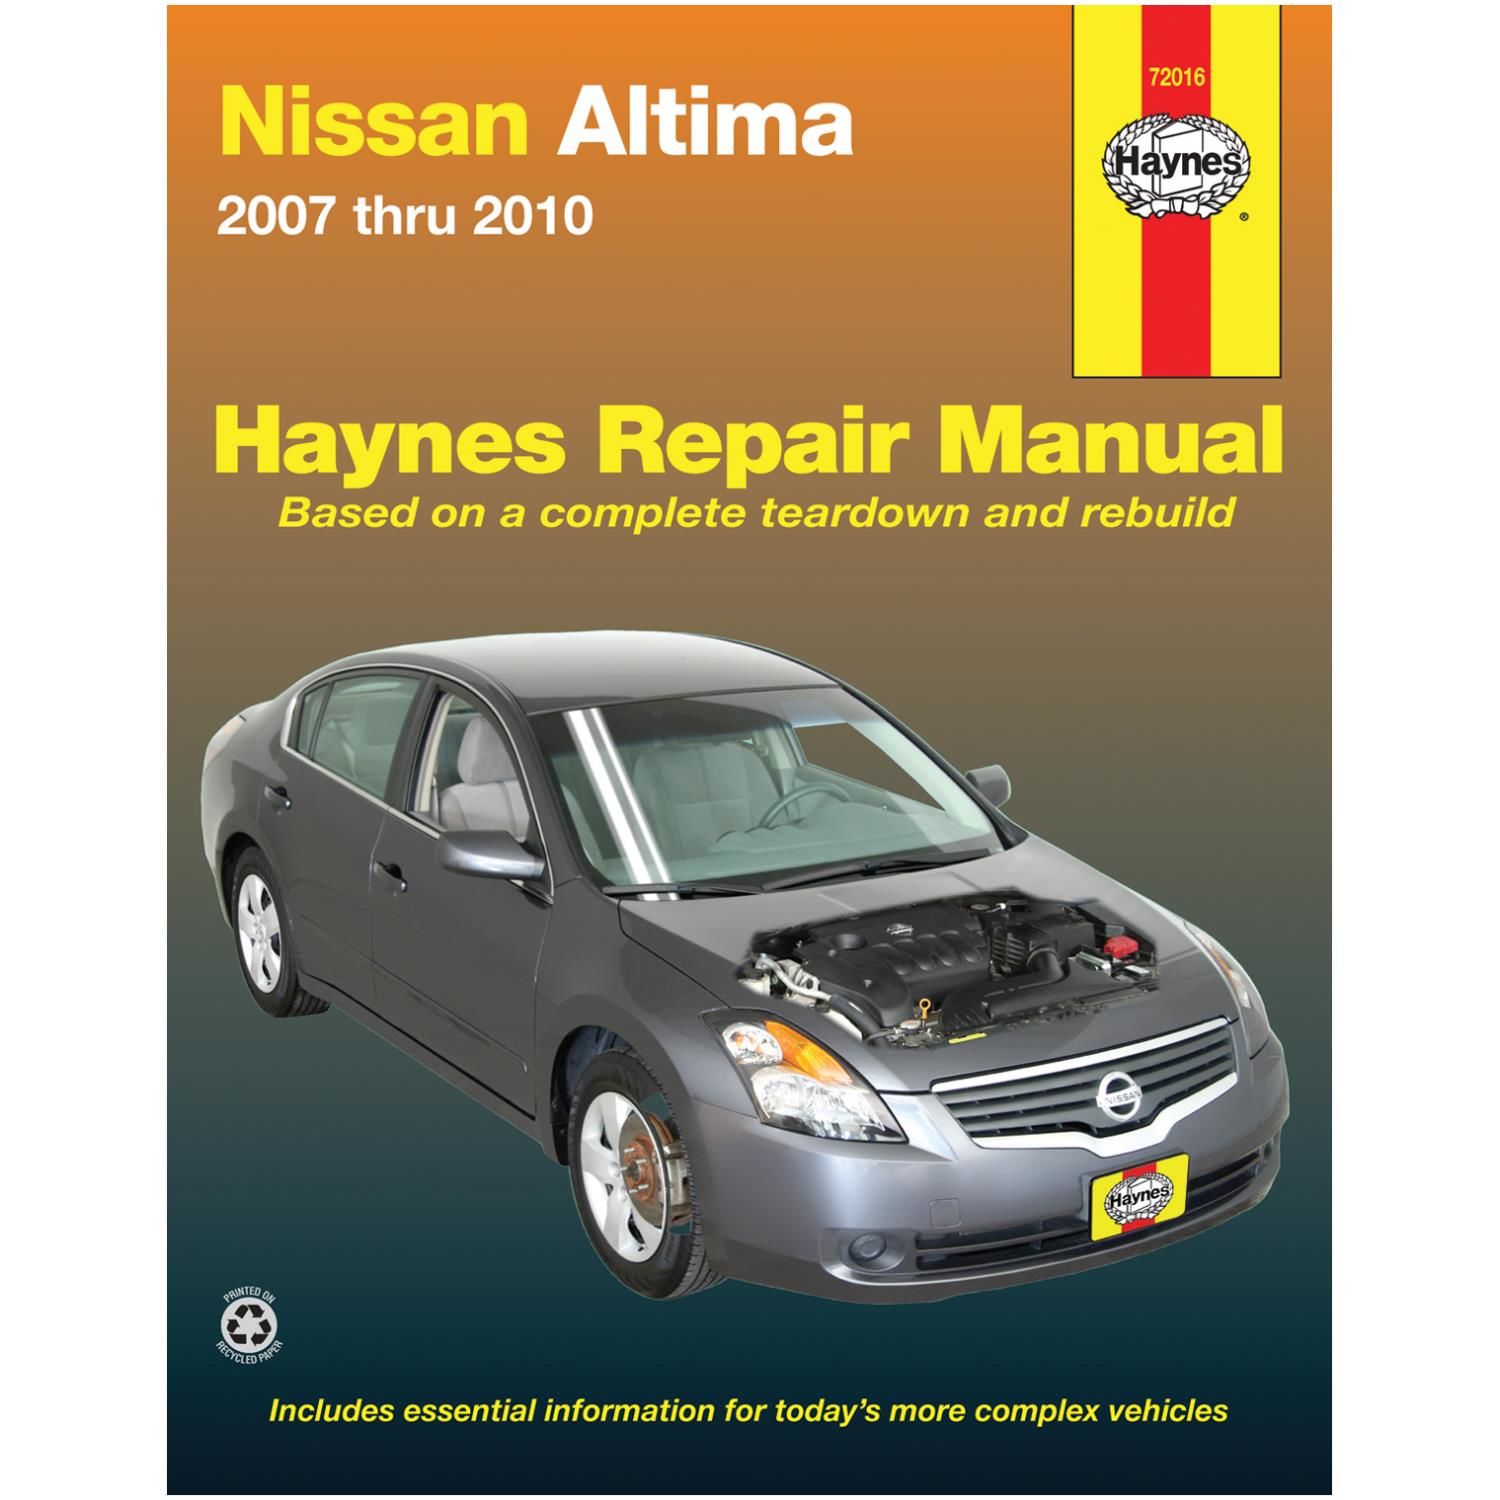 Haynes Repair Manual Vehicle 72016